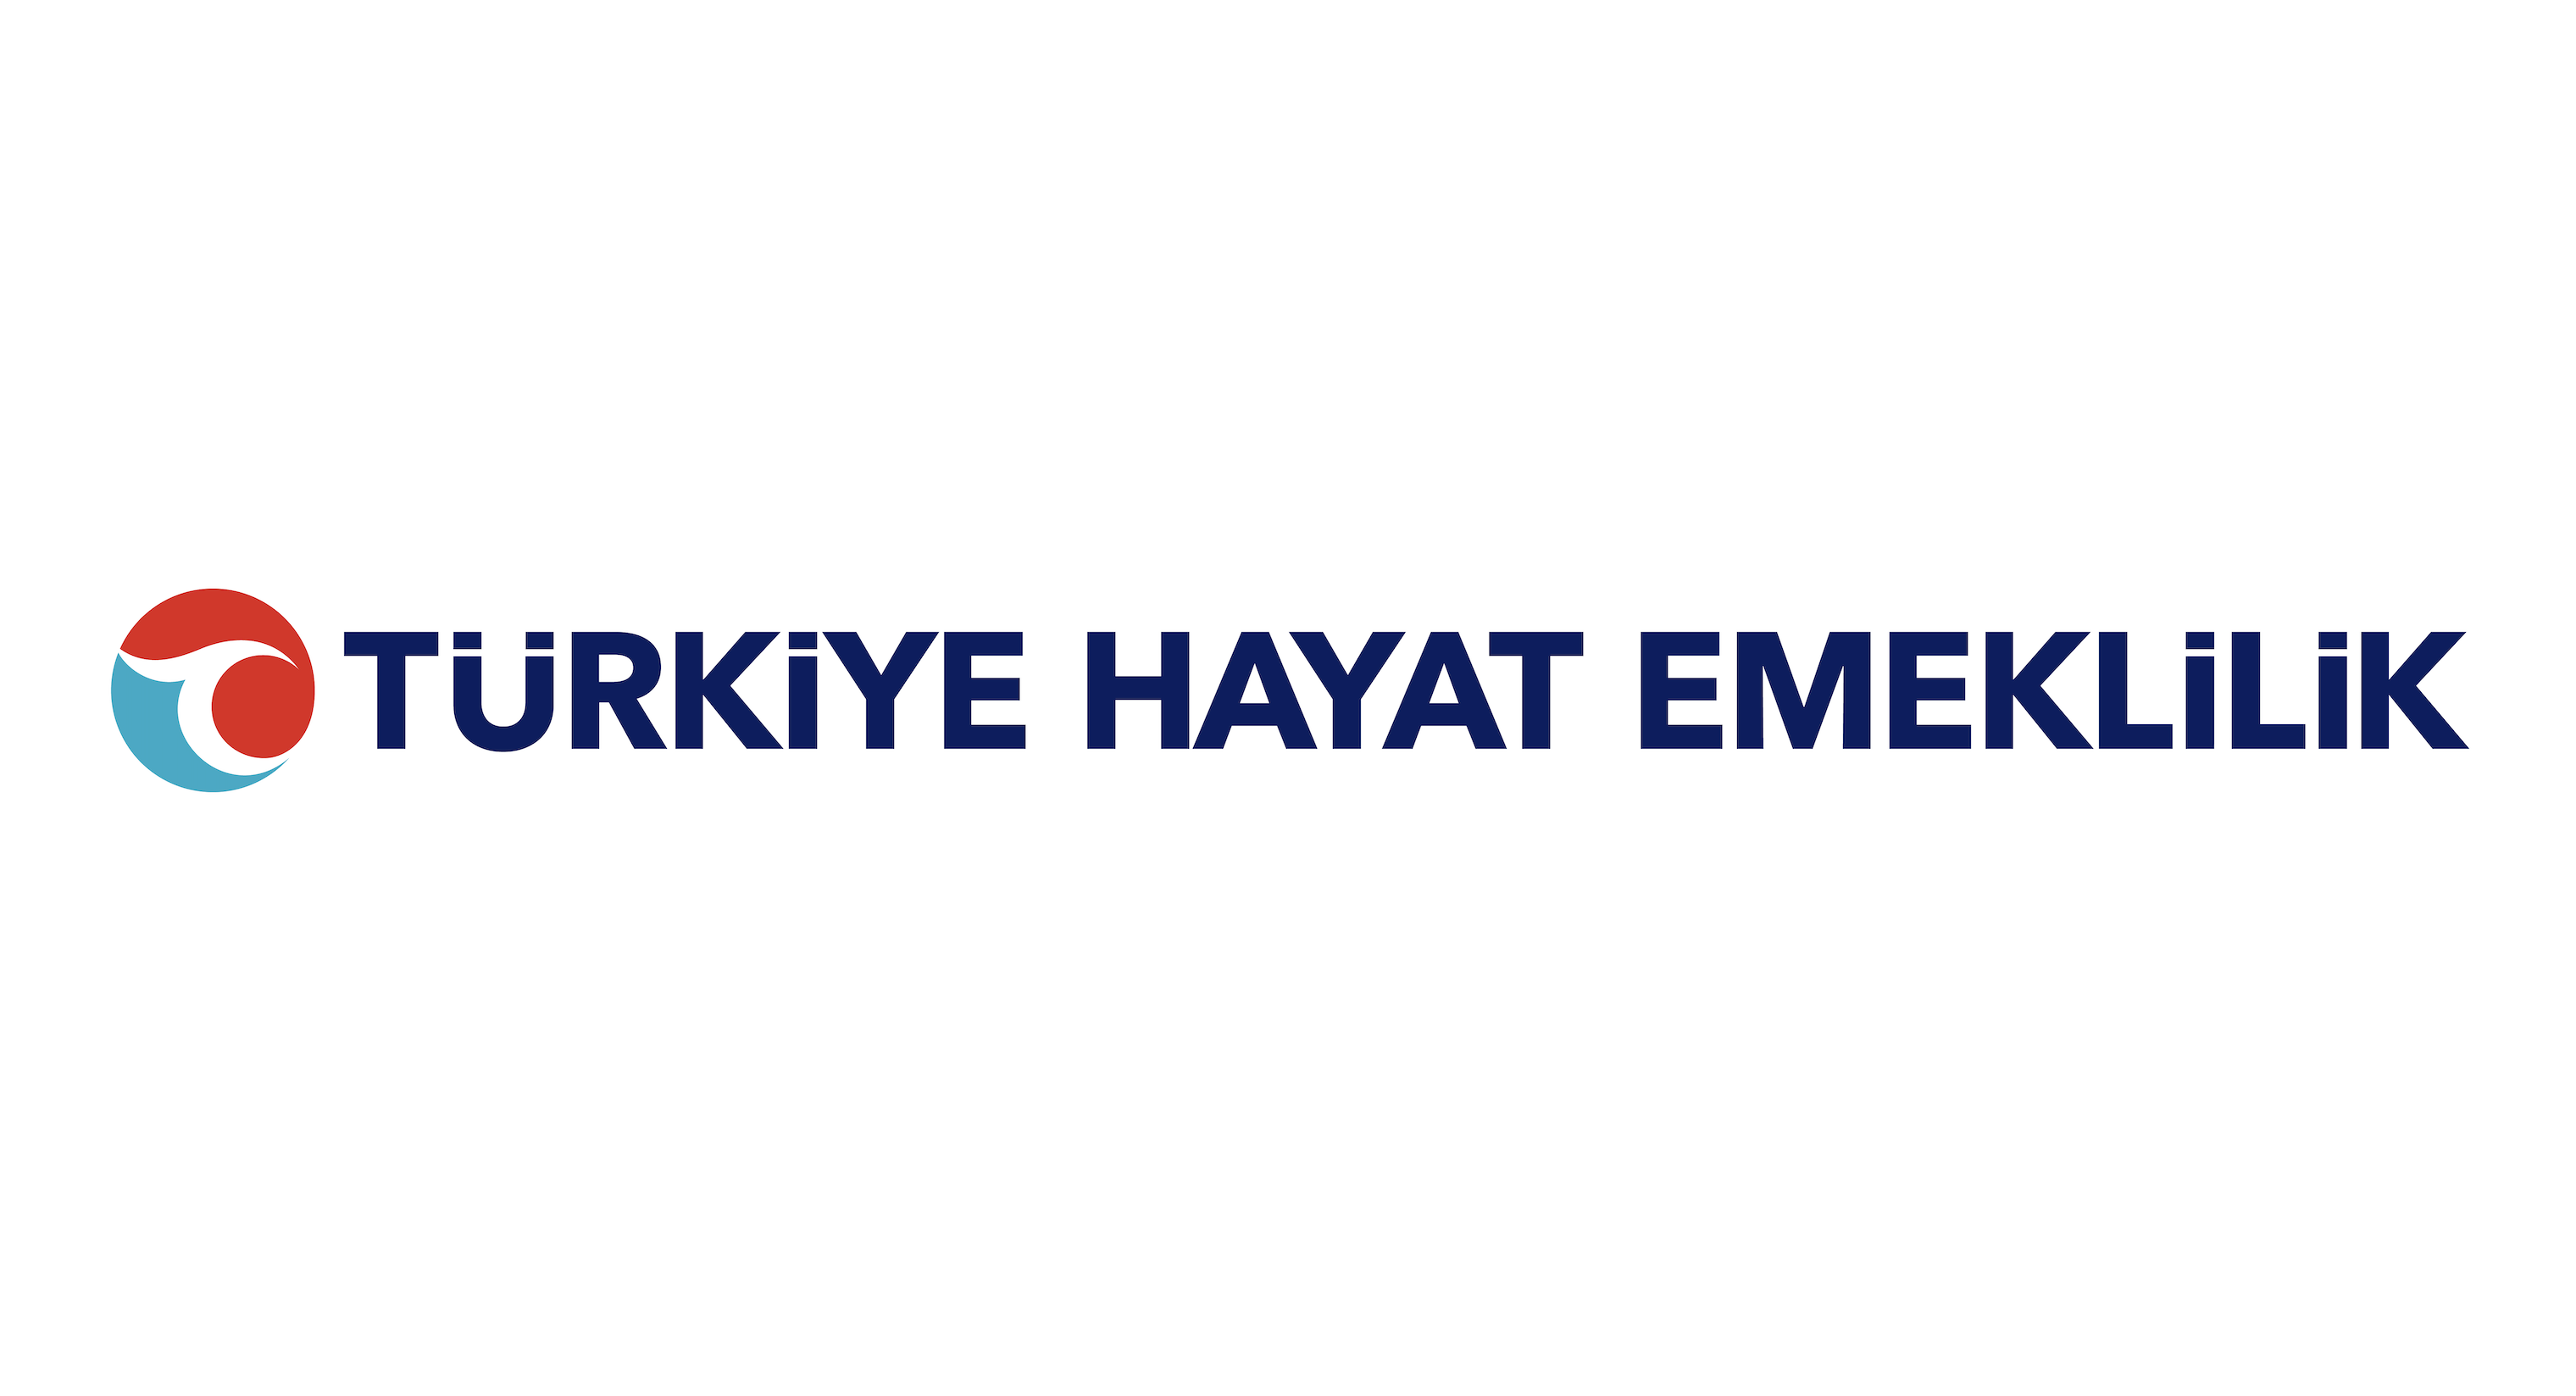 Türkiye Hayat Emeklilik’ten eğitim güvencesi